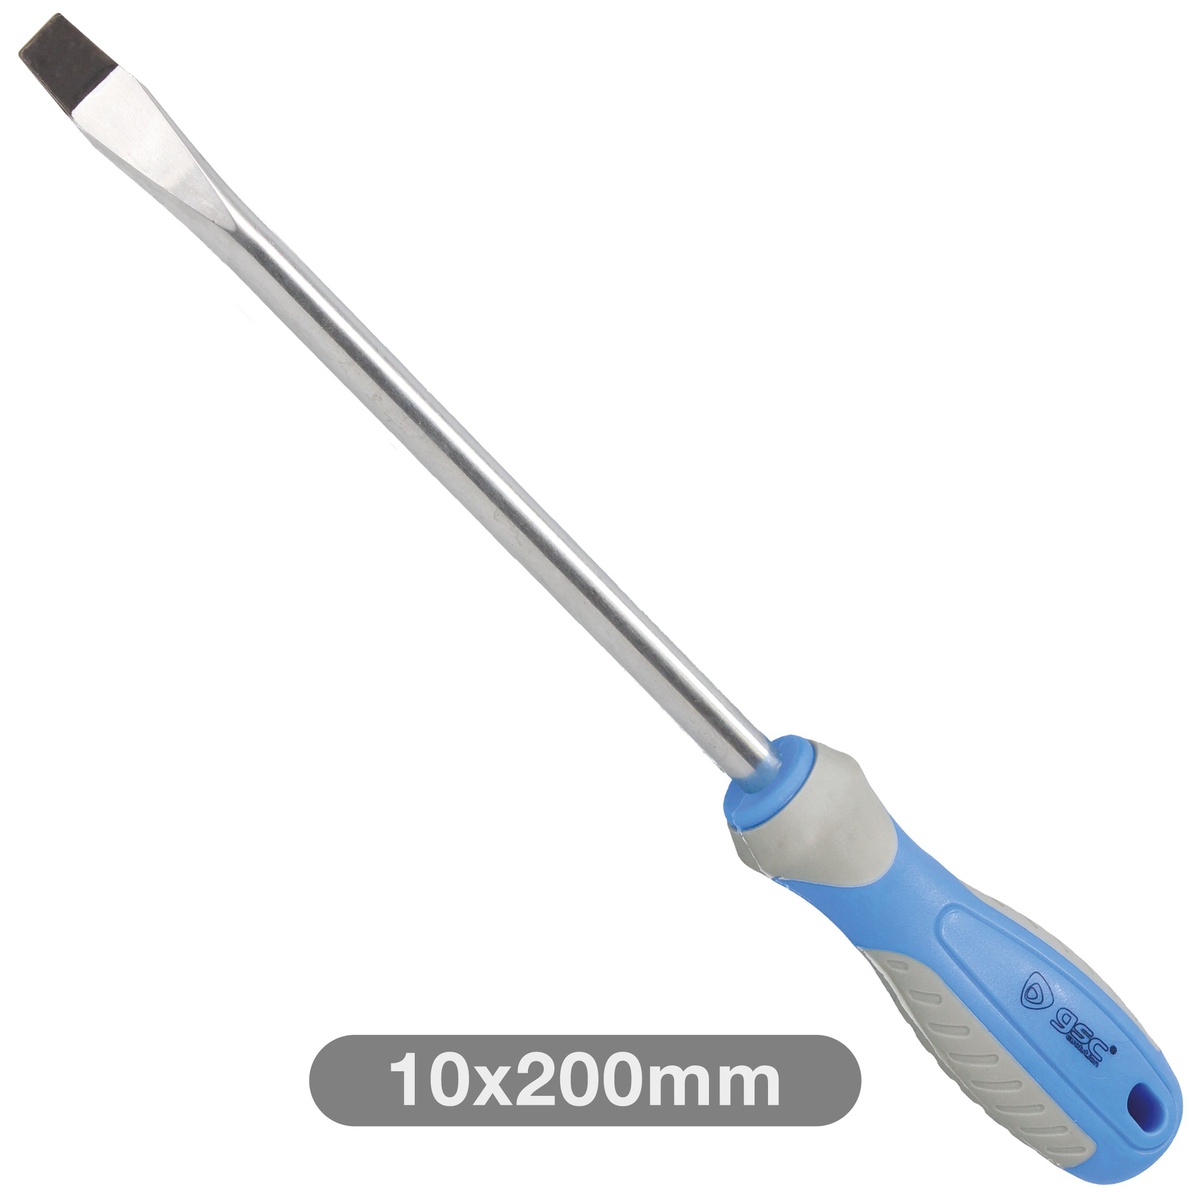 Flat screwdriver 10x200mm